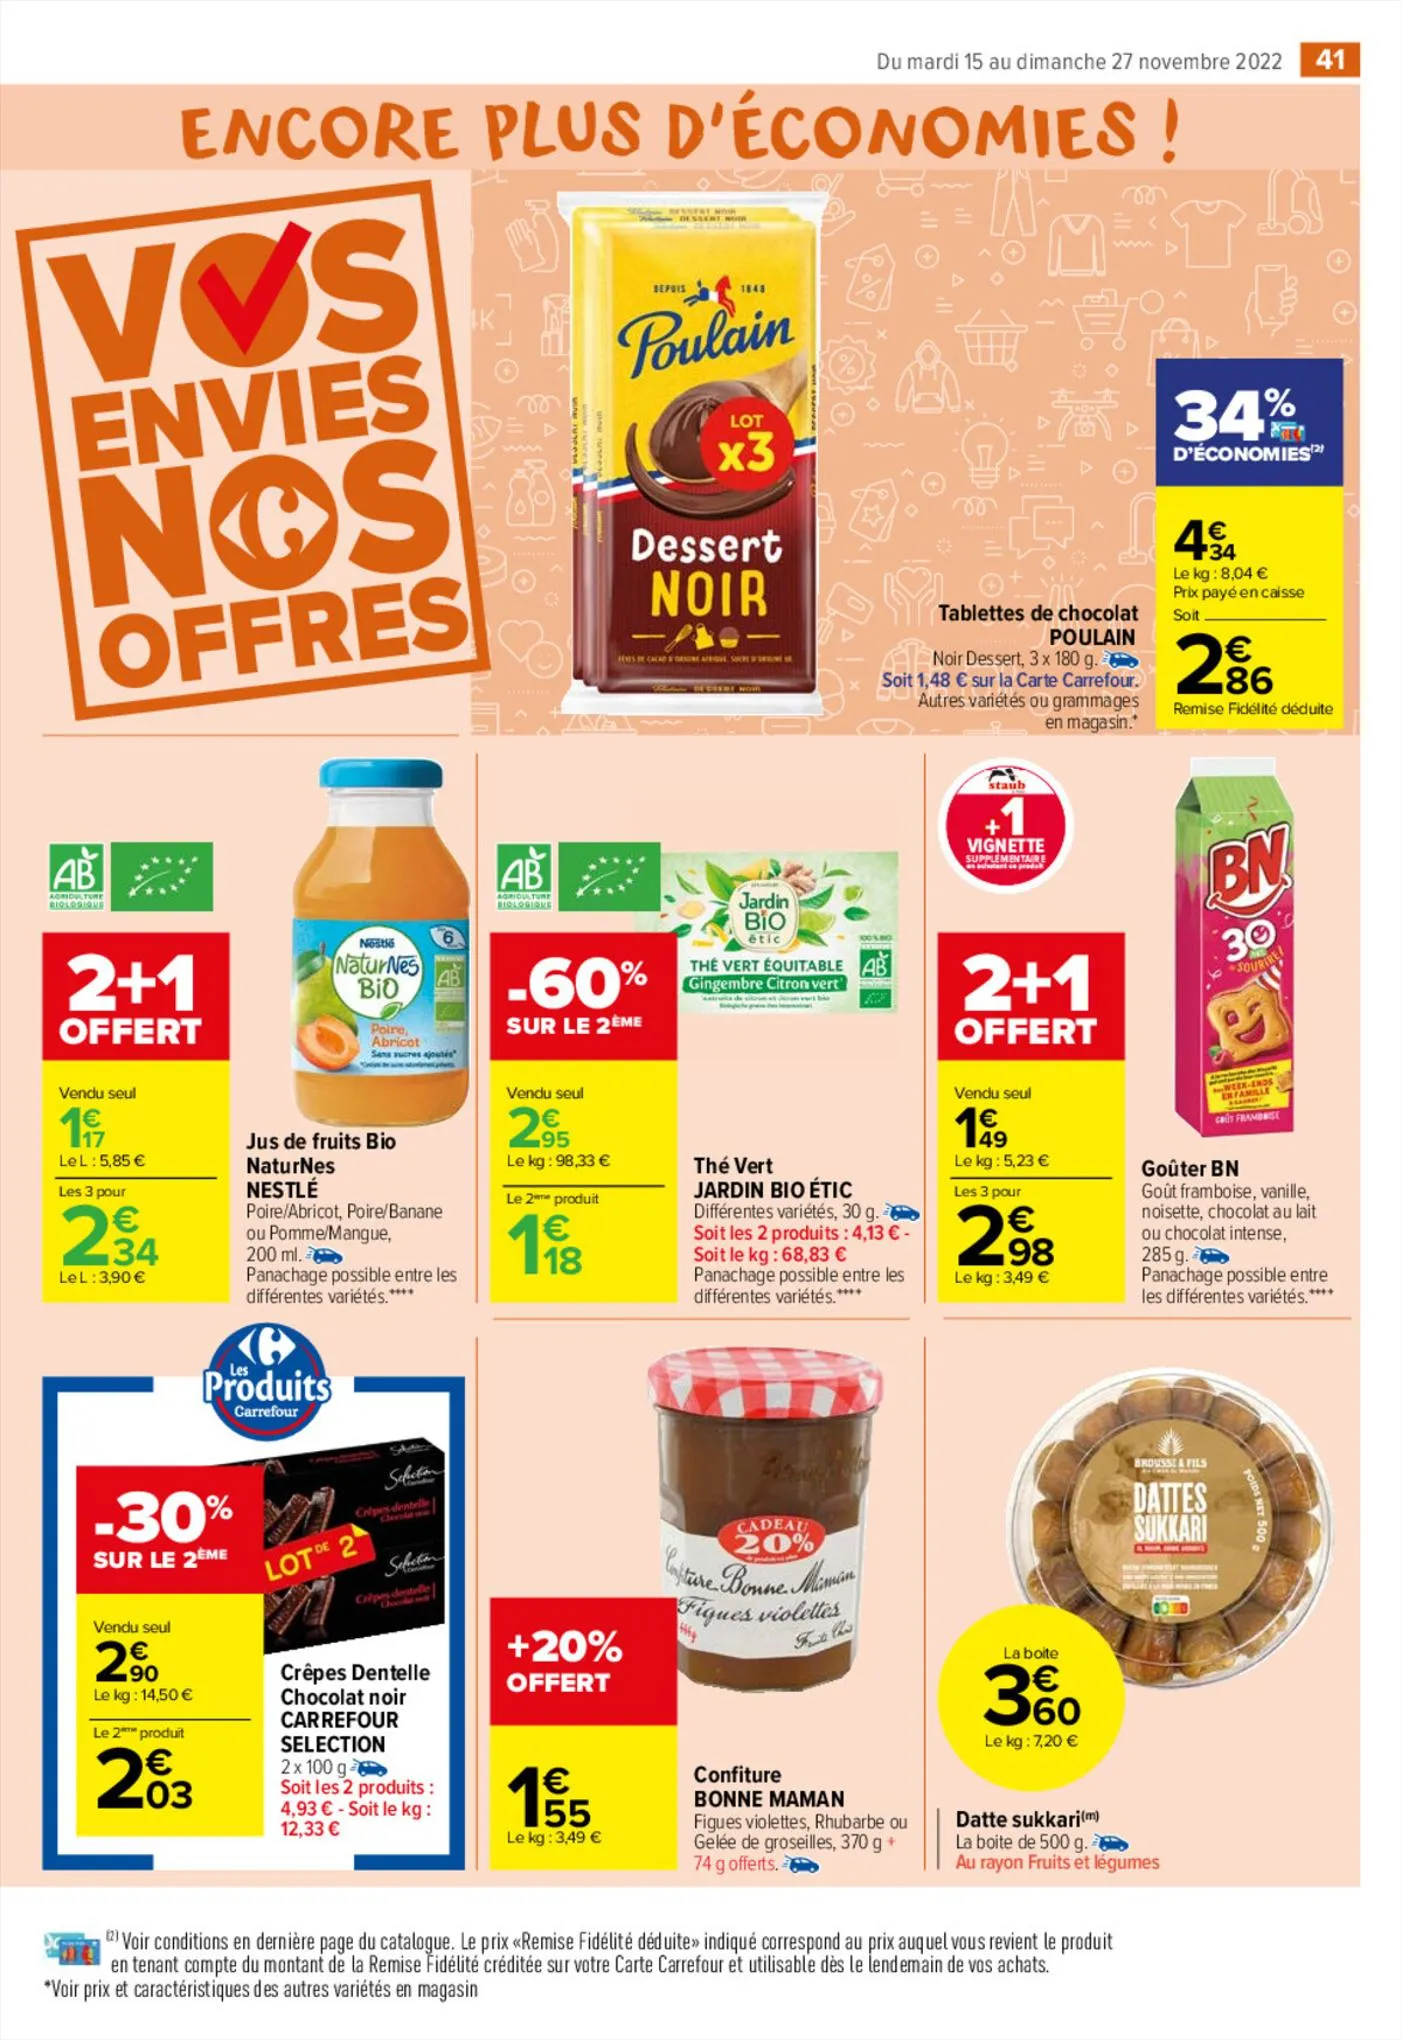 Catalogue Vos envies nos promos Ferrero, page 00043